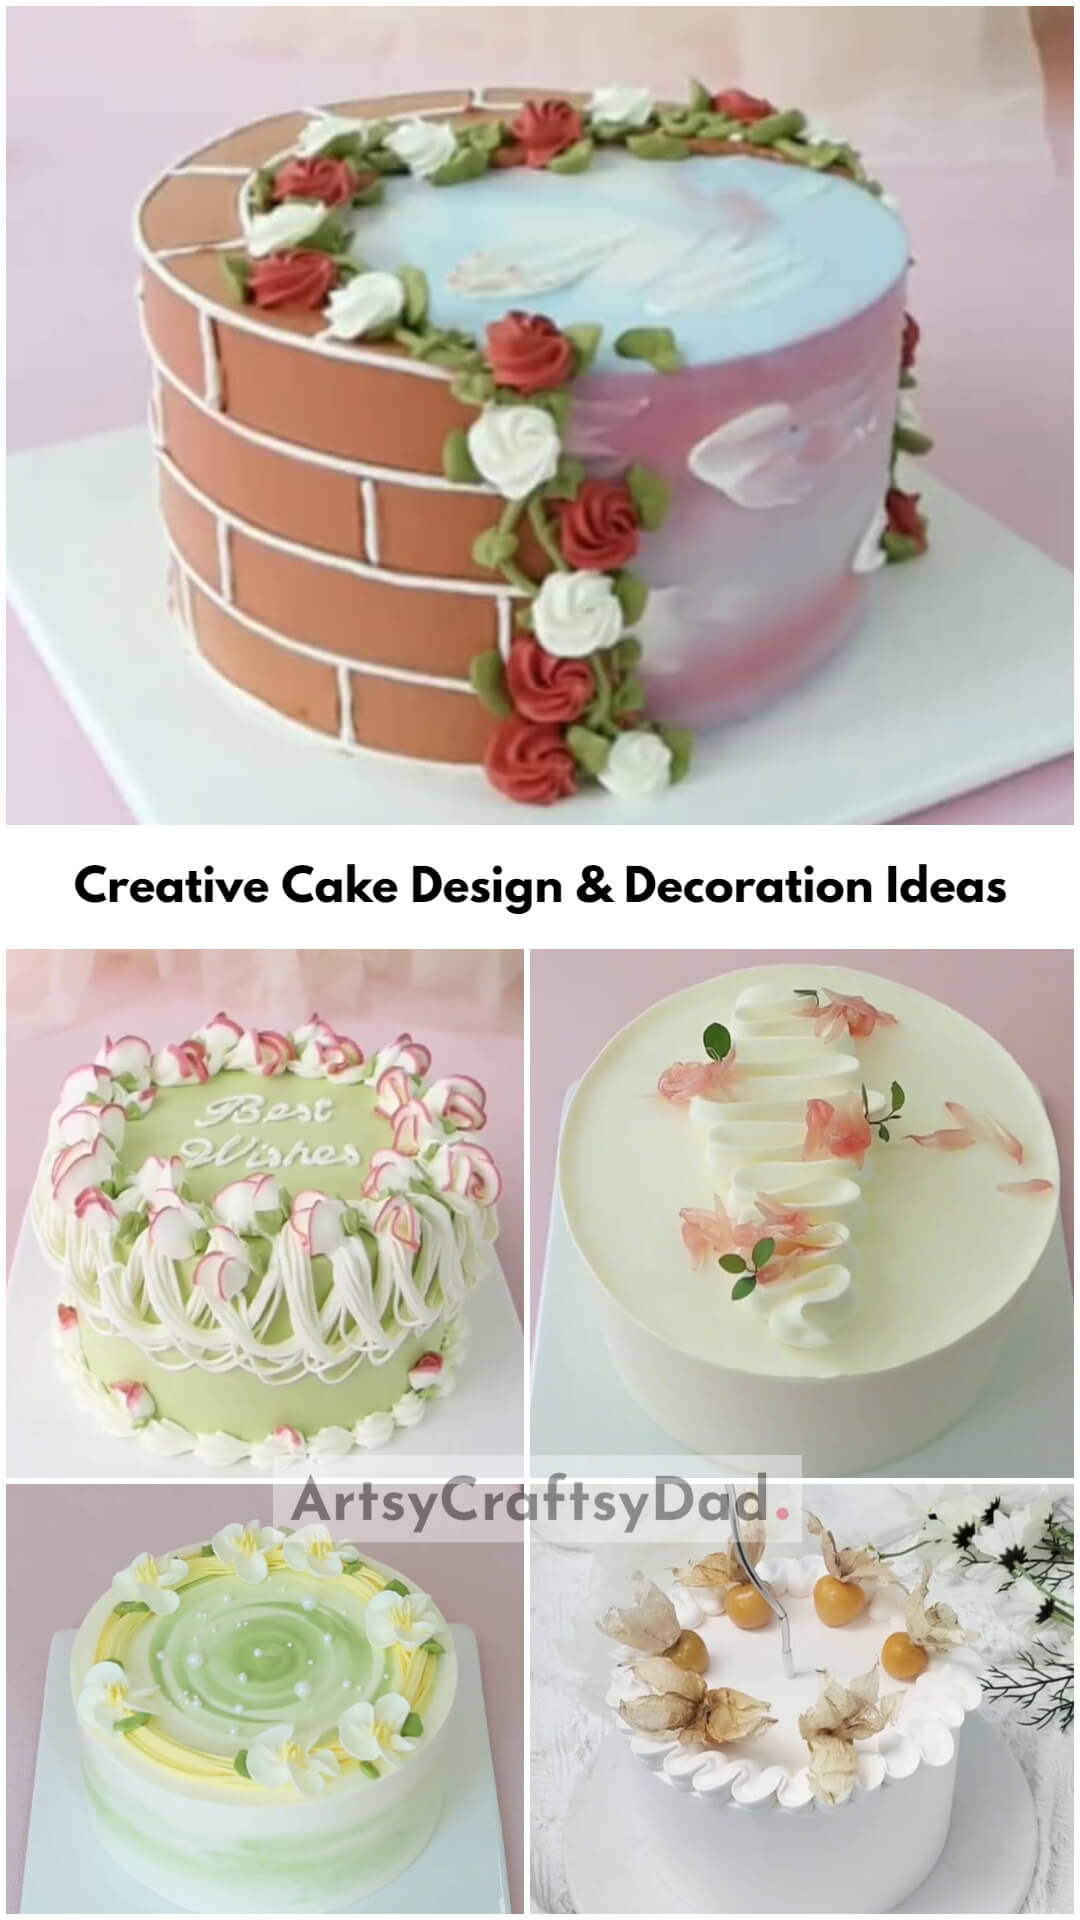 Creative Cake Design & Decoration Ideas